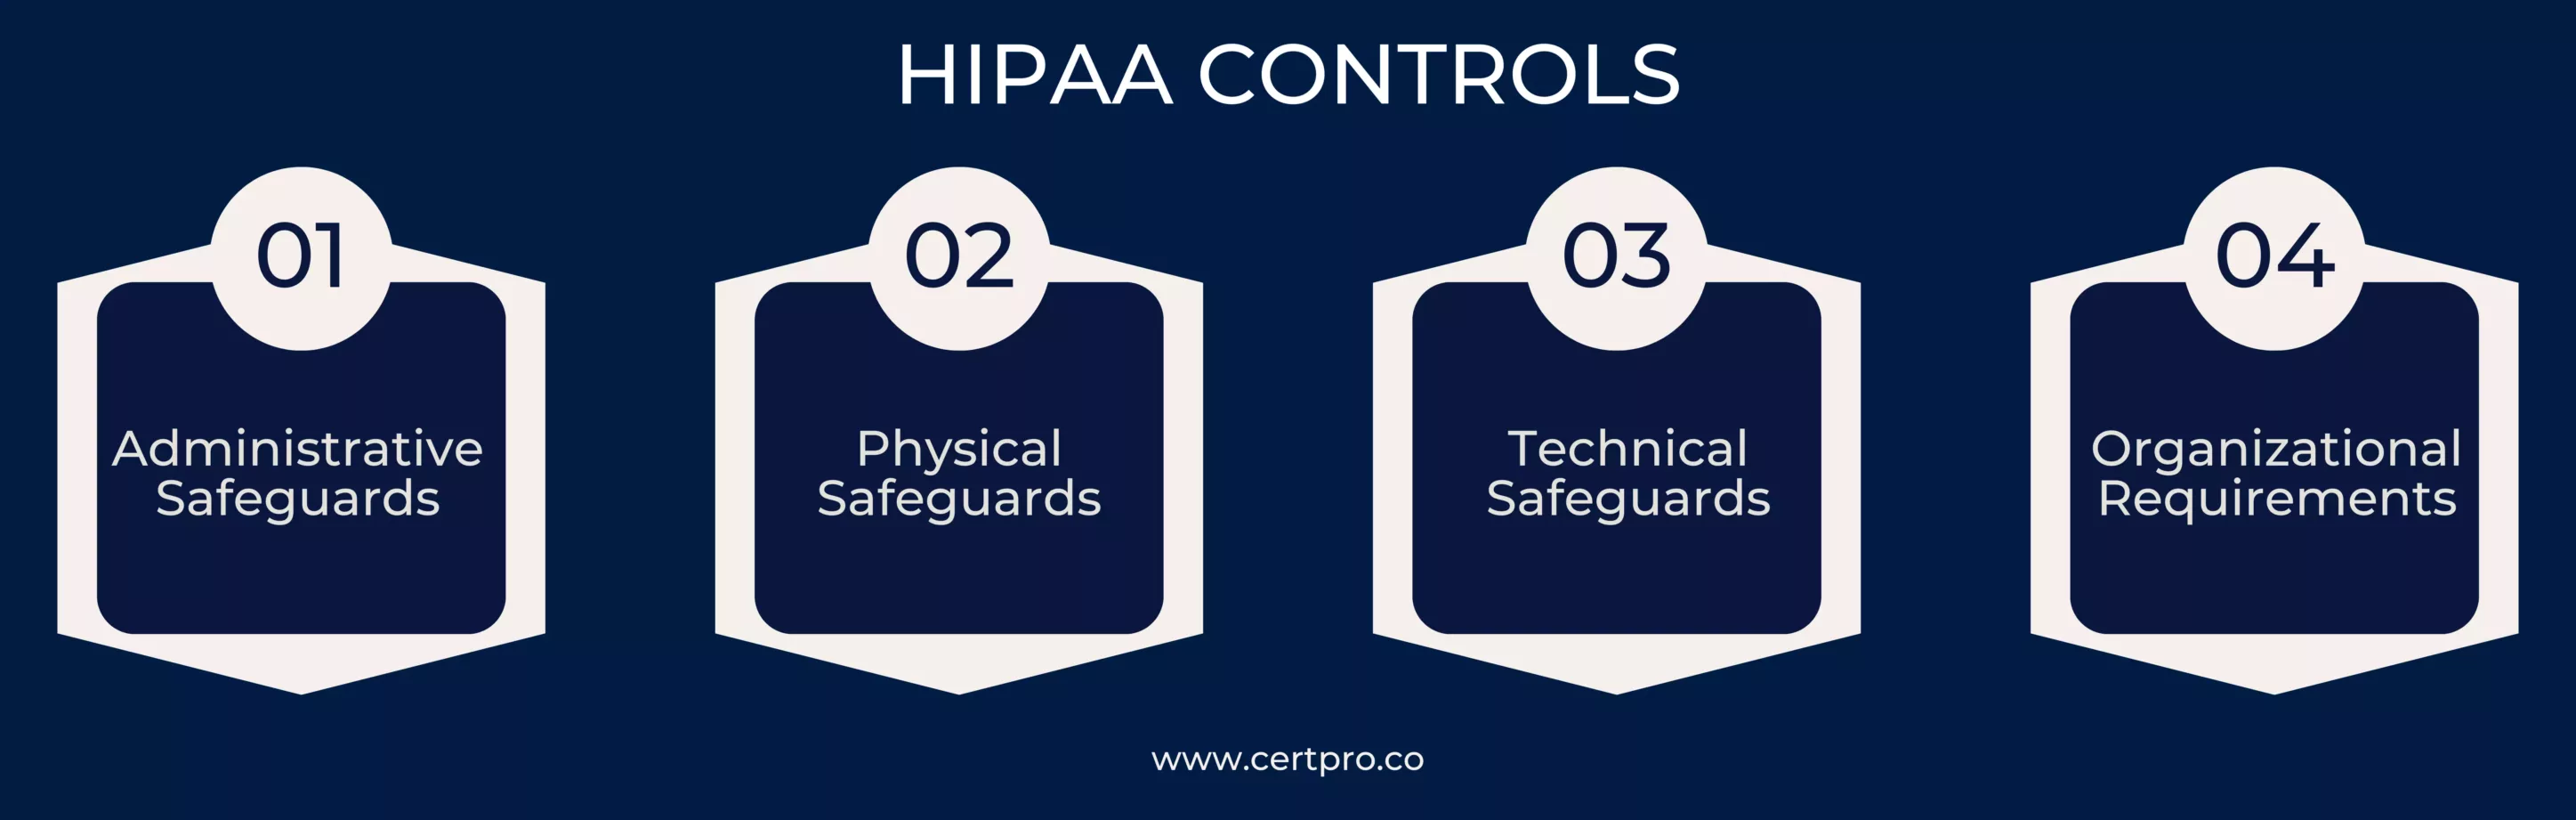 HIPAA CONTROLS